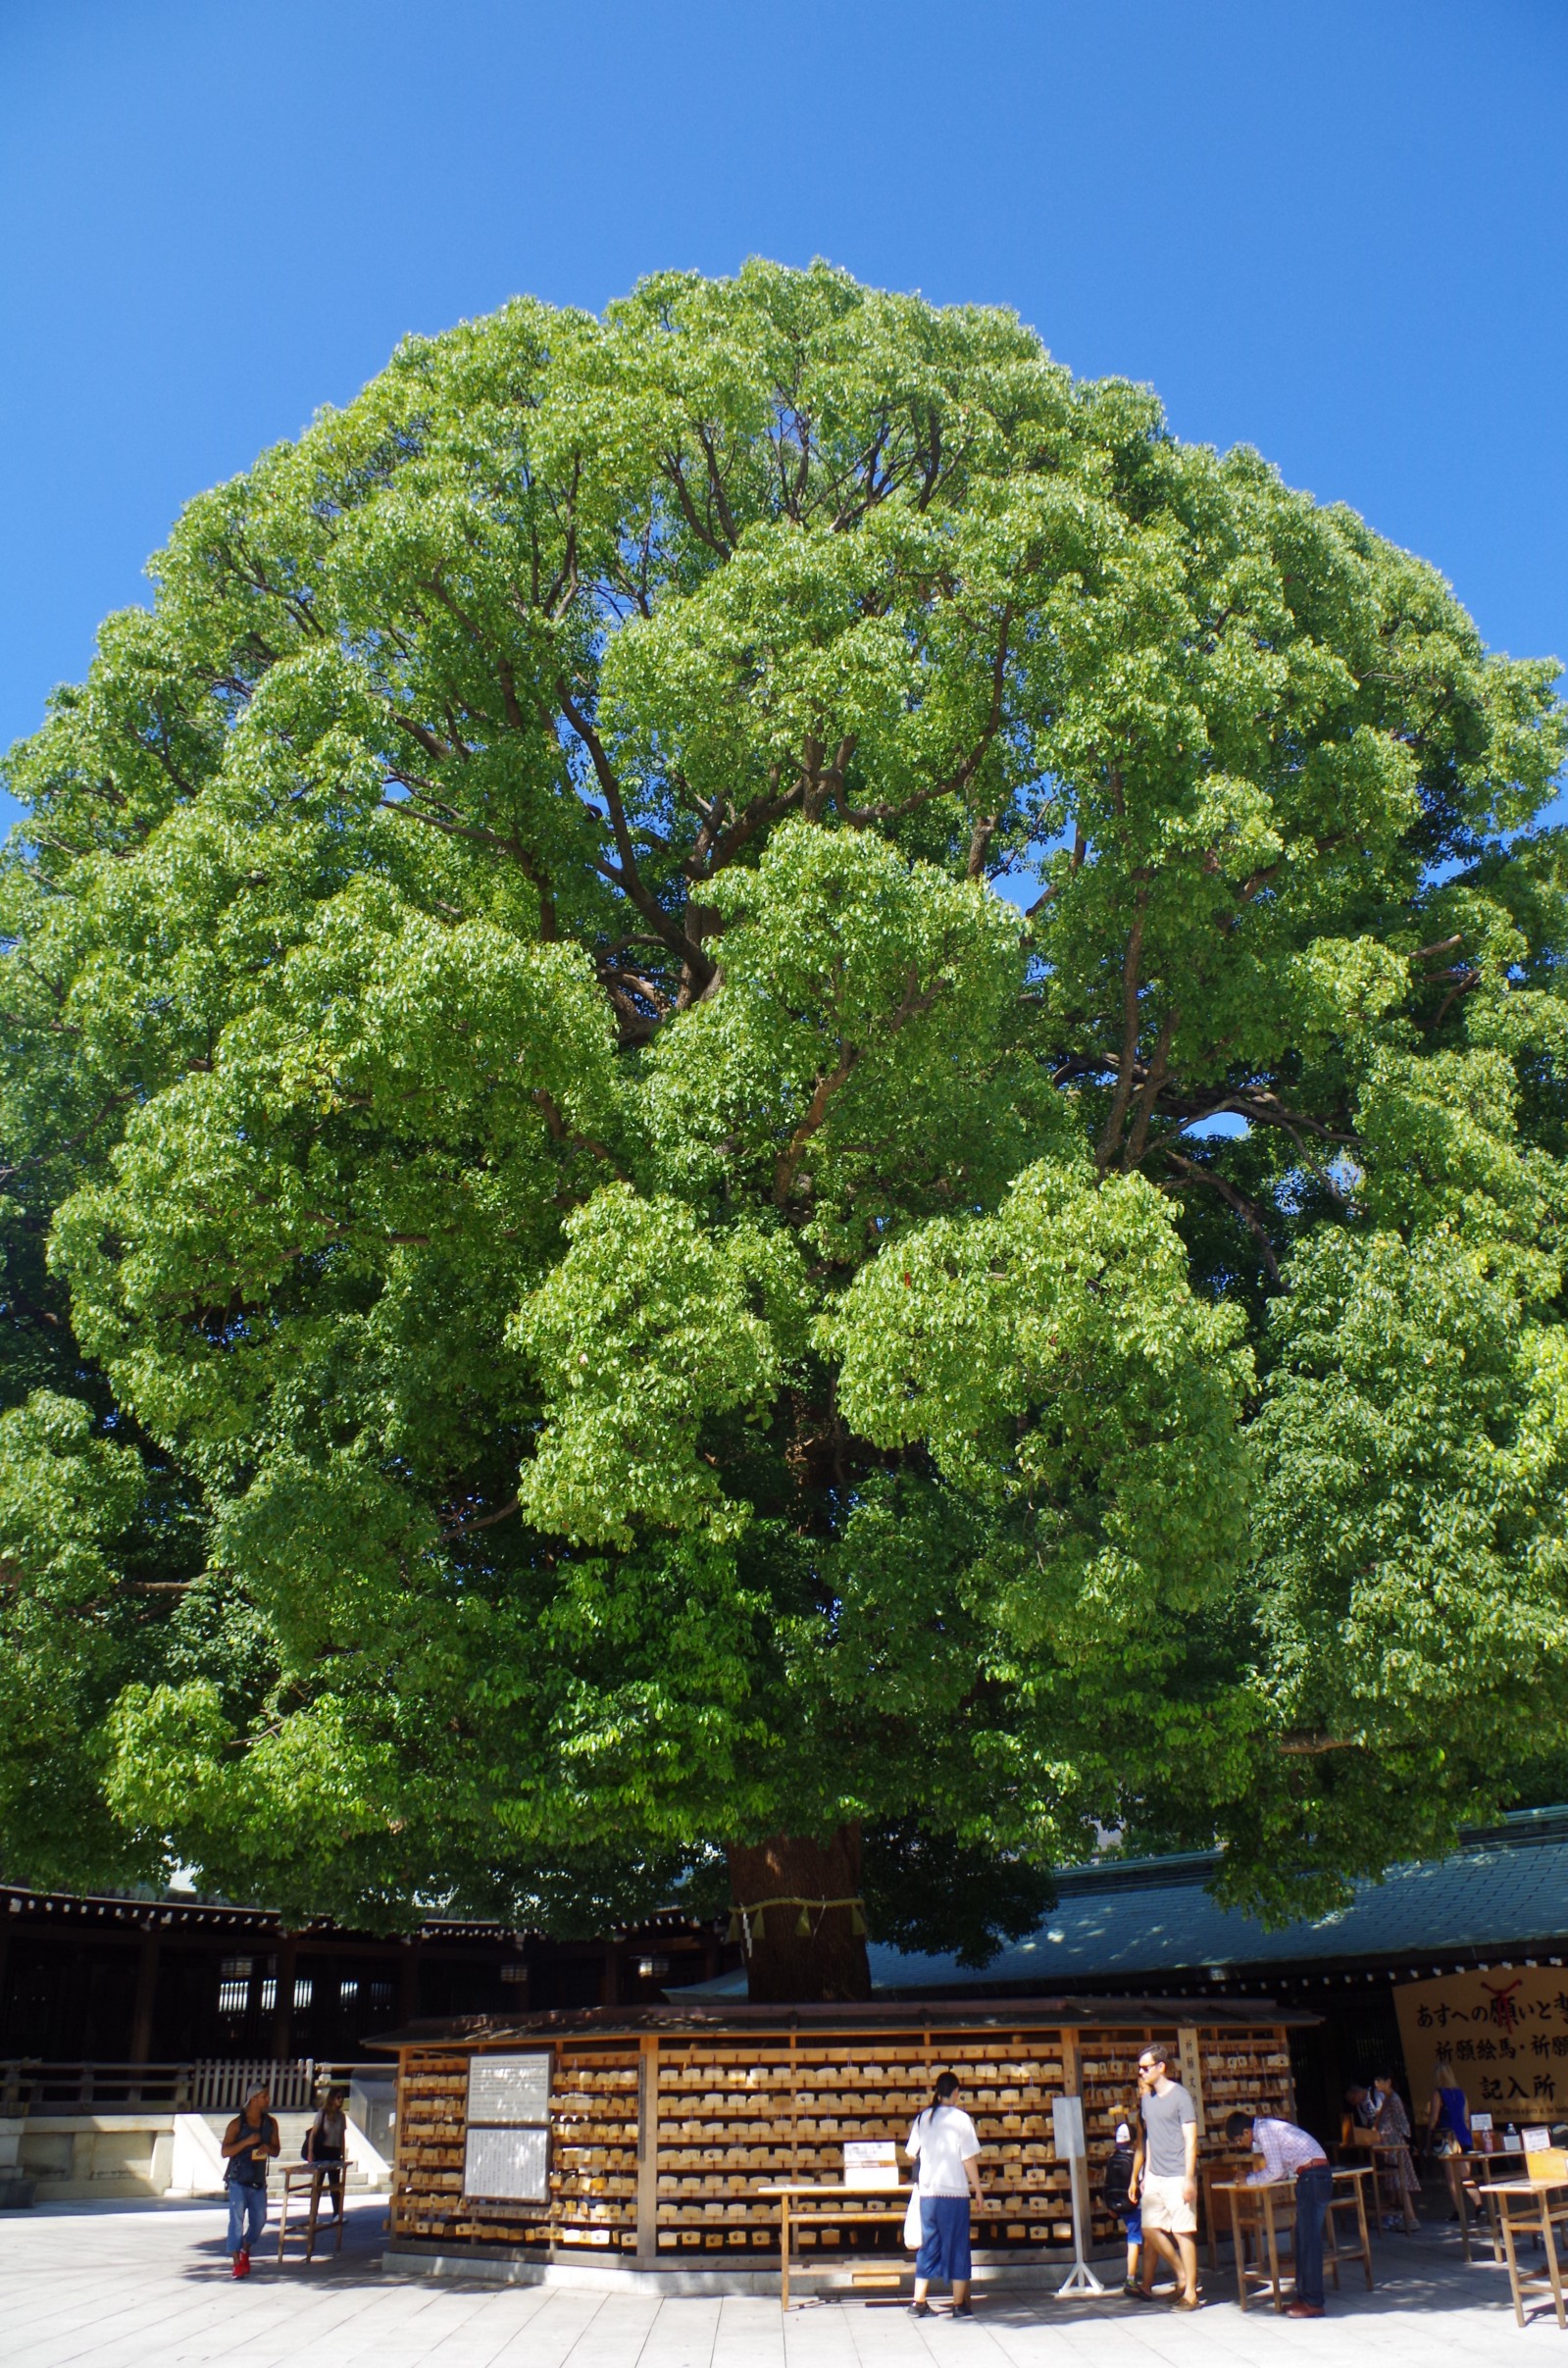 Gigantic tree at Meiji Shrine